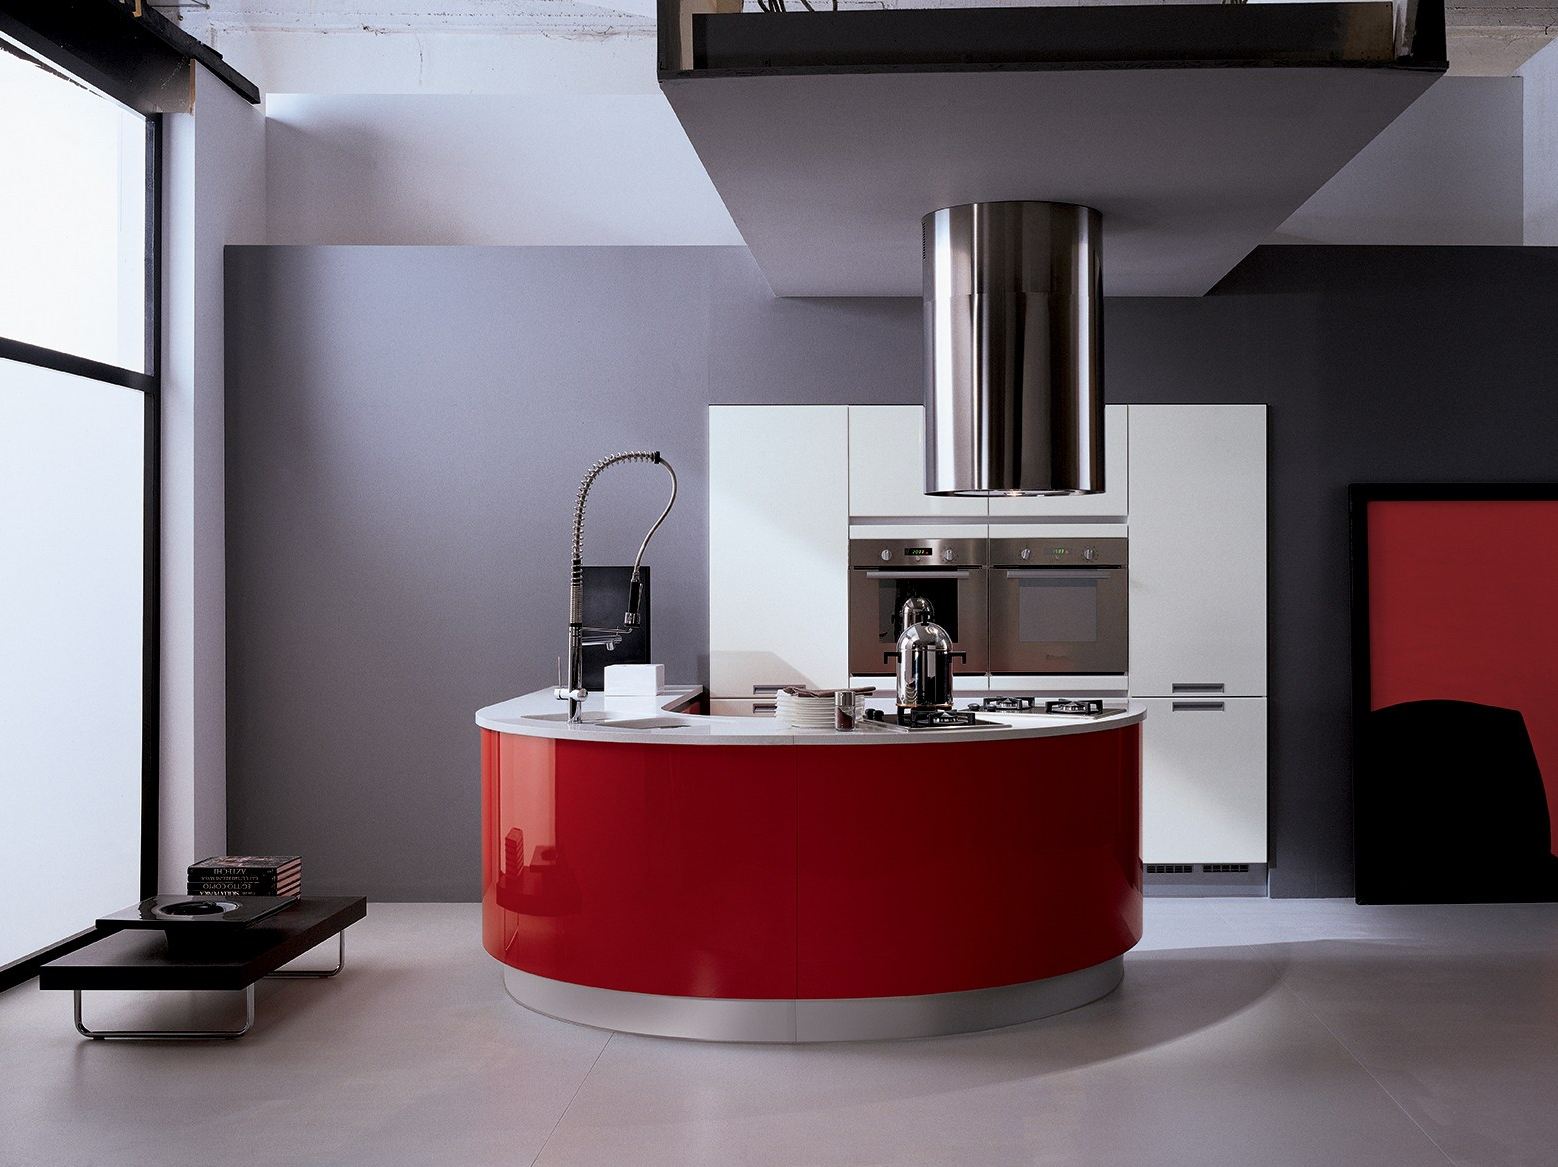 Необычный дизайн кухни Timo Plus от Biefbi в красном цвете